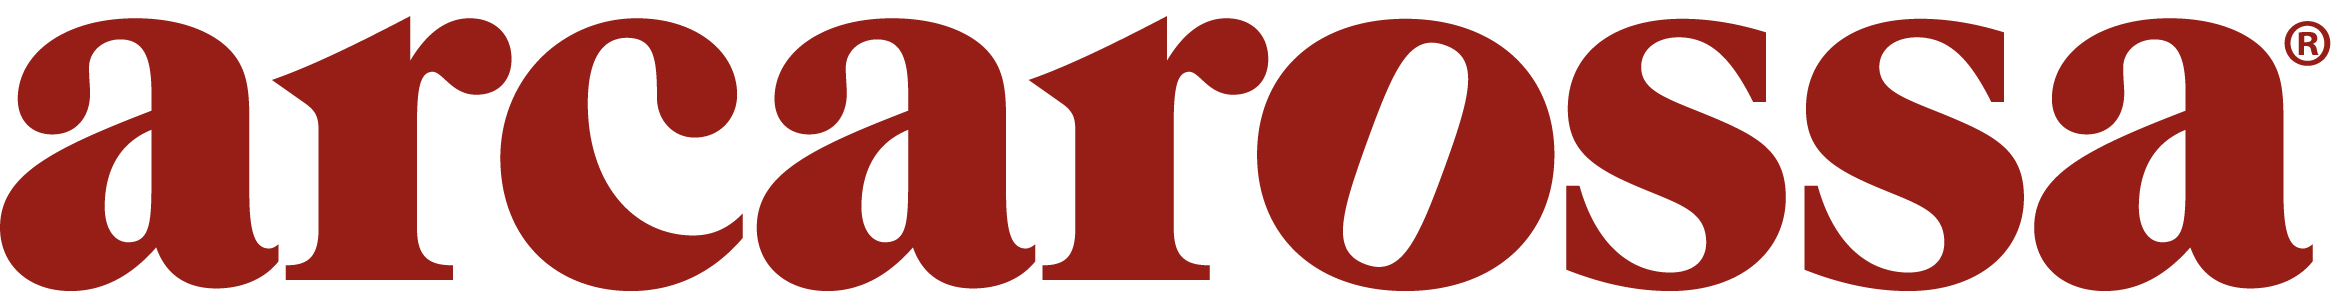 Logo arca rossa srl